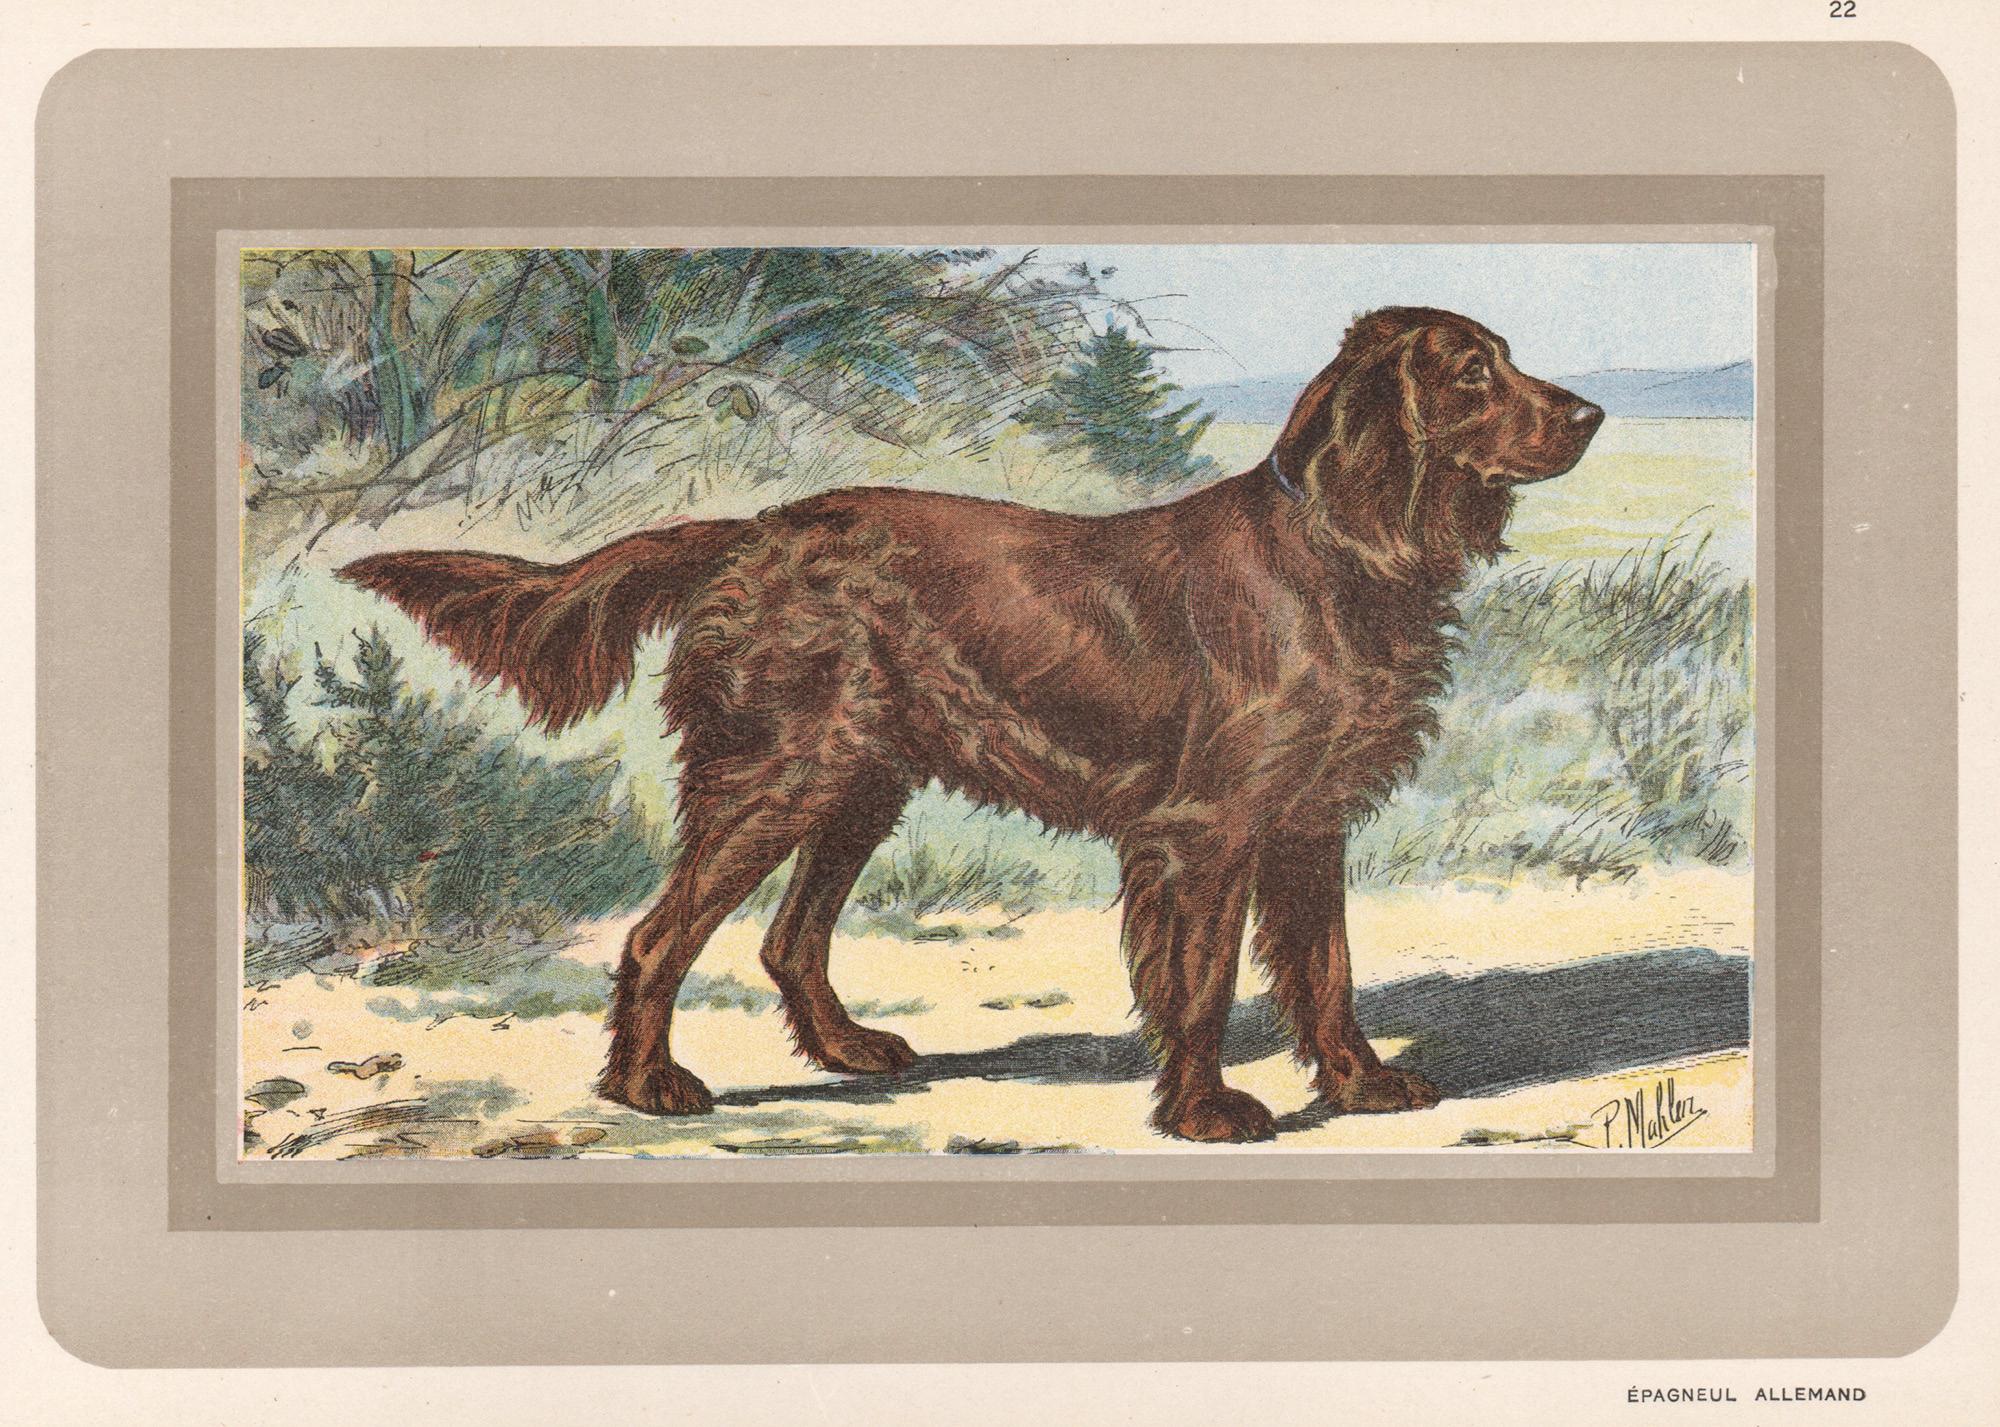 Animal Print P. Mahler - Epagneul Allemand - épagneul allemand, chien français, chromolithographie de chien, années 1930